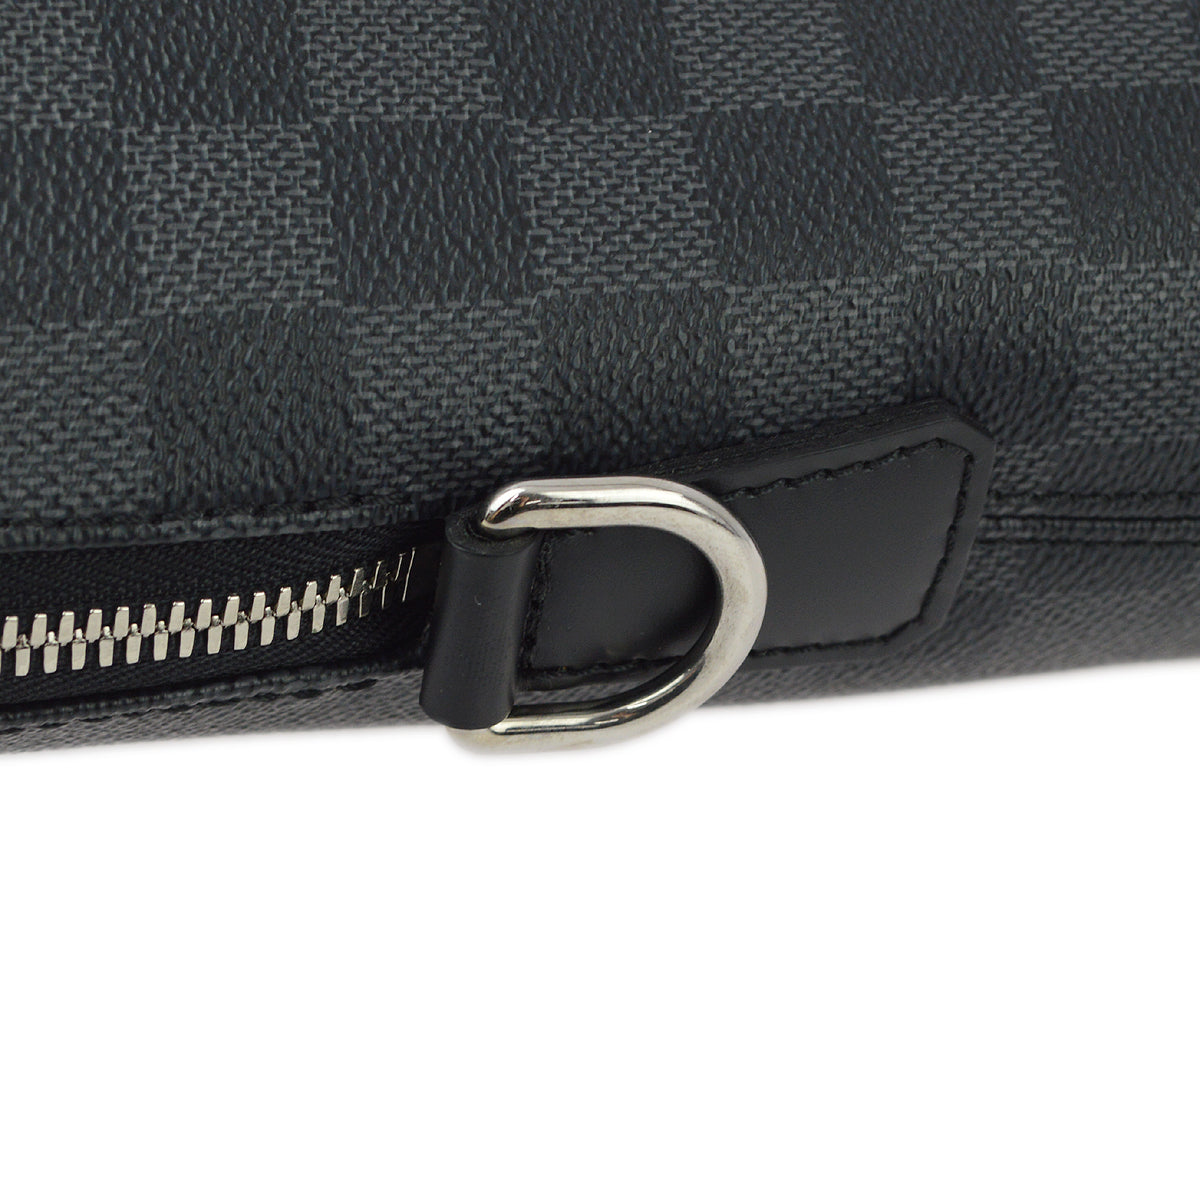 Louis Vuitton 2013 Damier Graphite Porte Documents Jour Handbag N48224